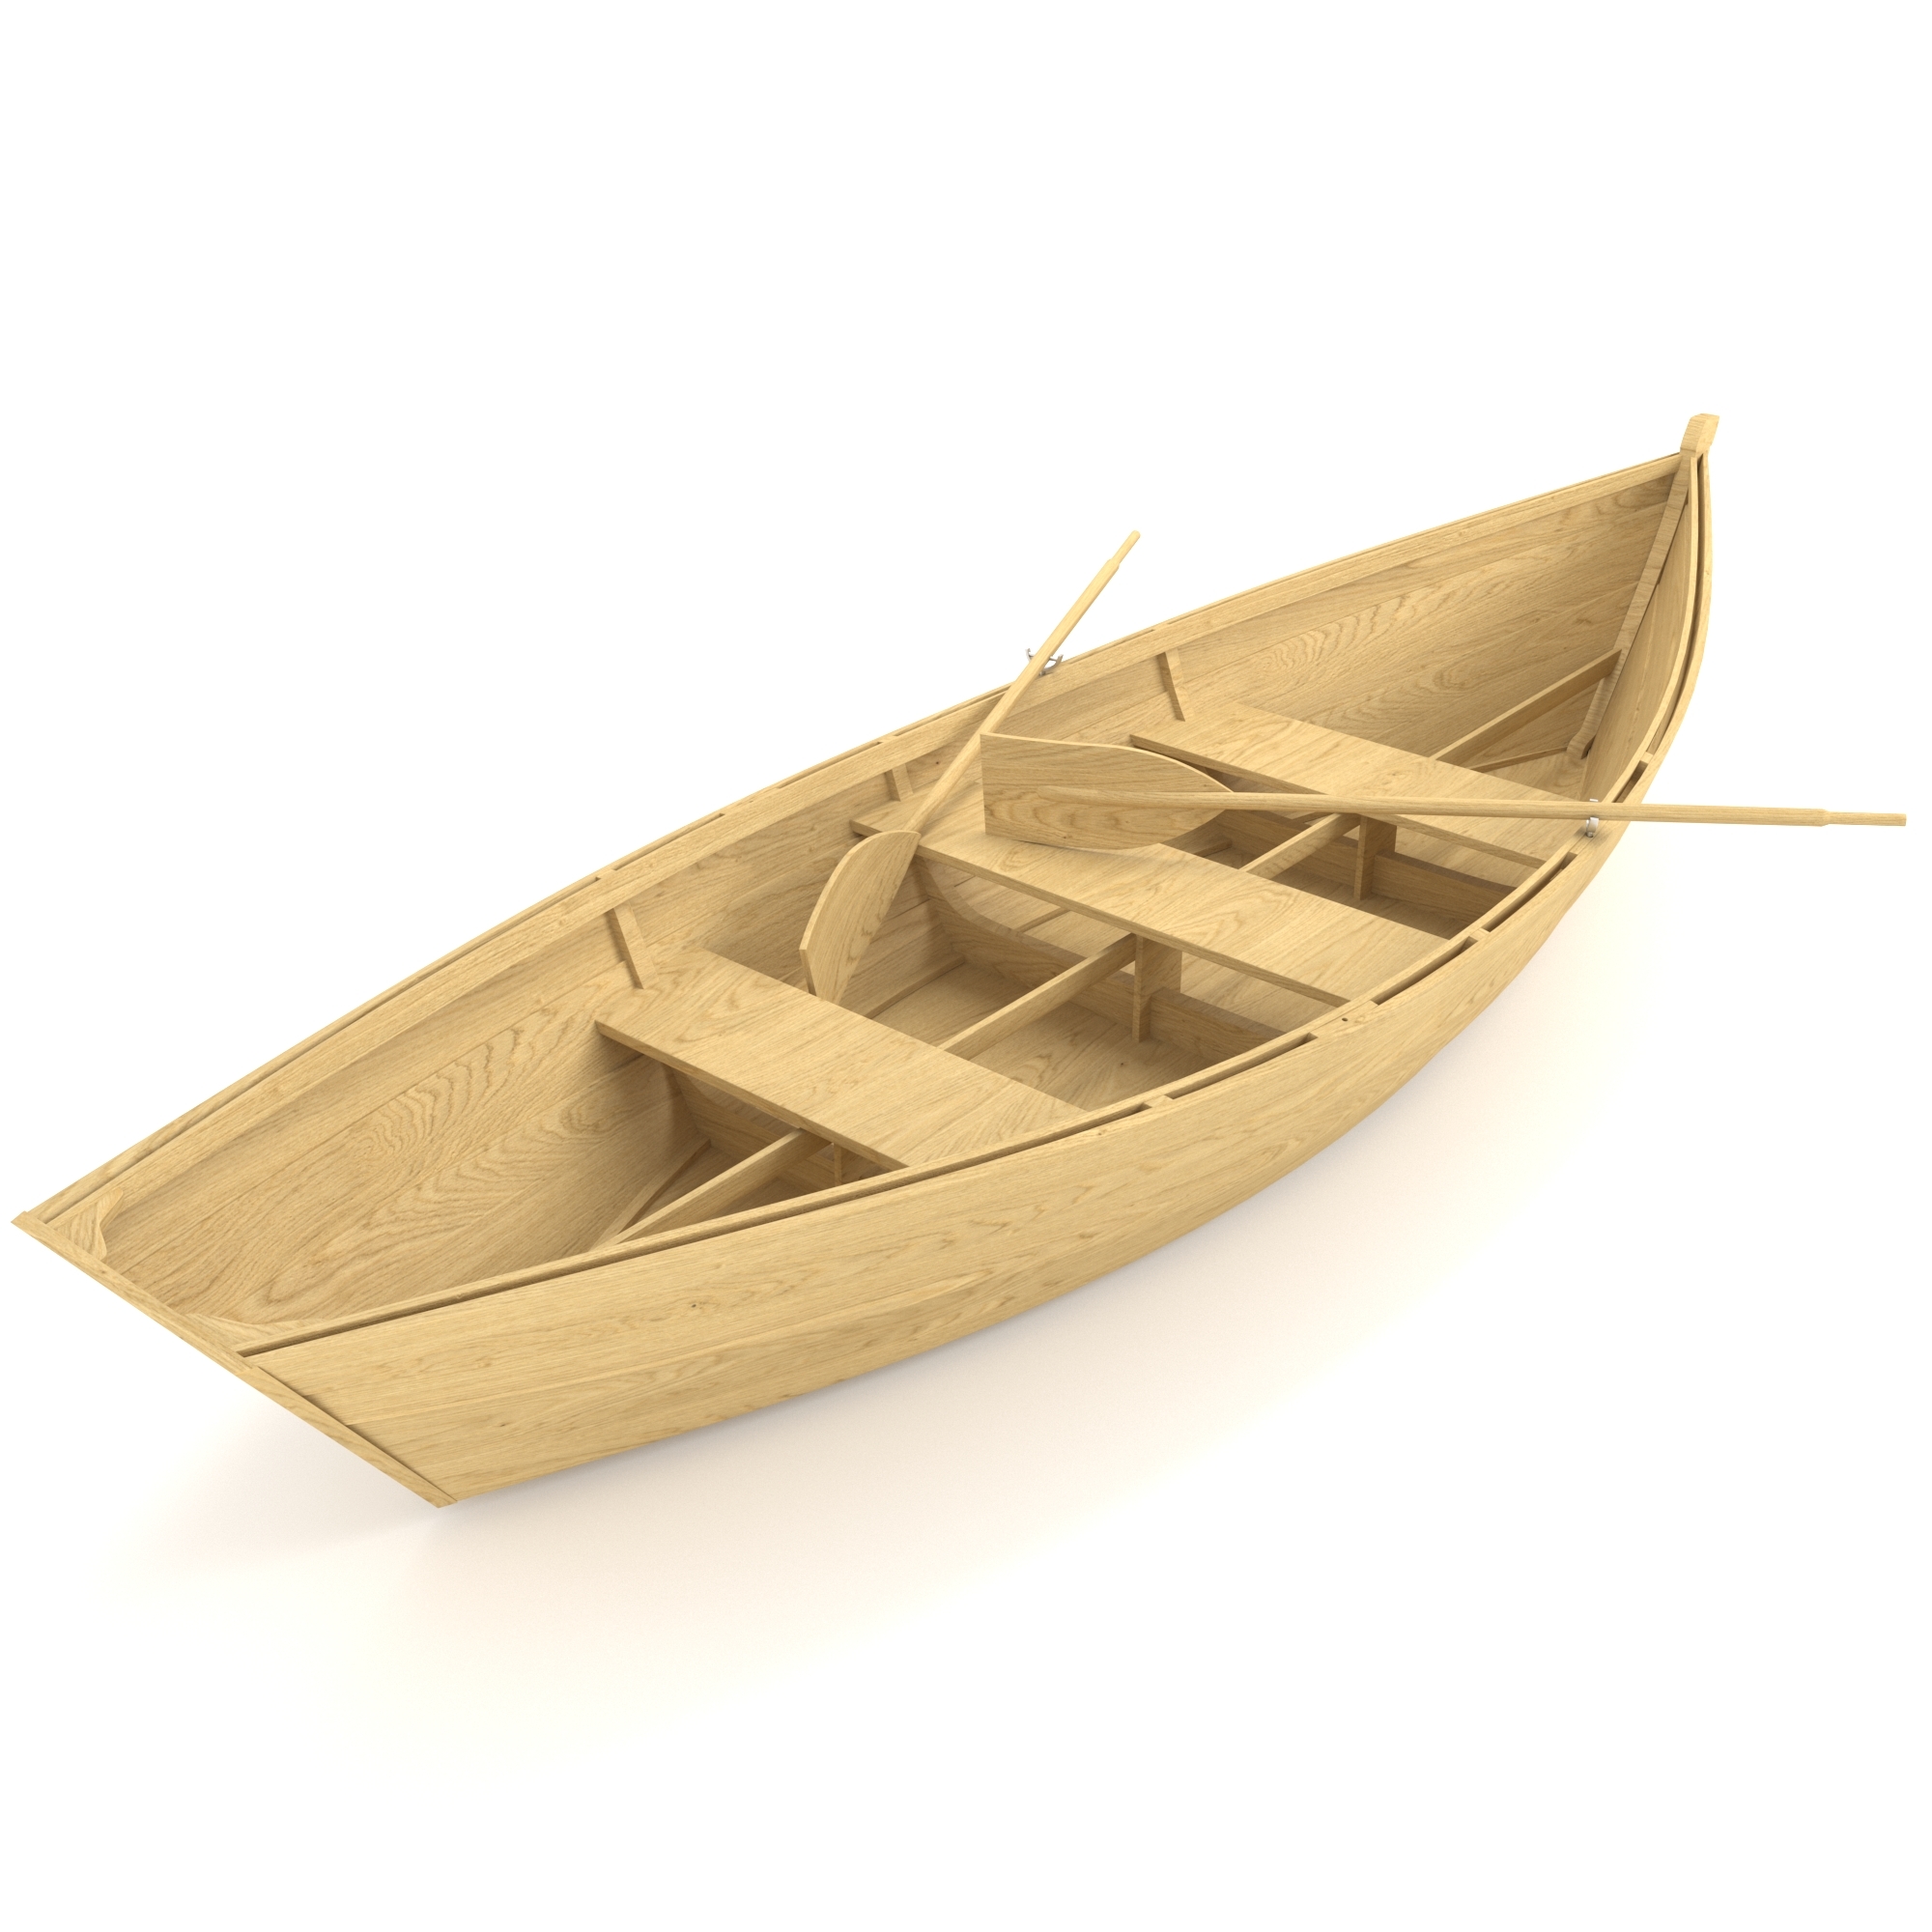 02-11-15渔船3d模型下载-【集简空间】「每日更新」